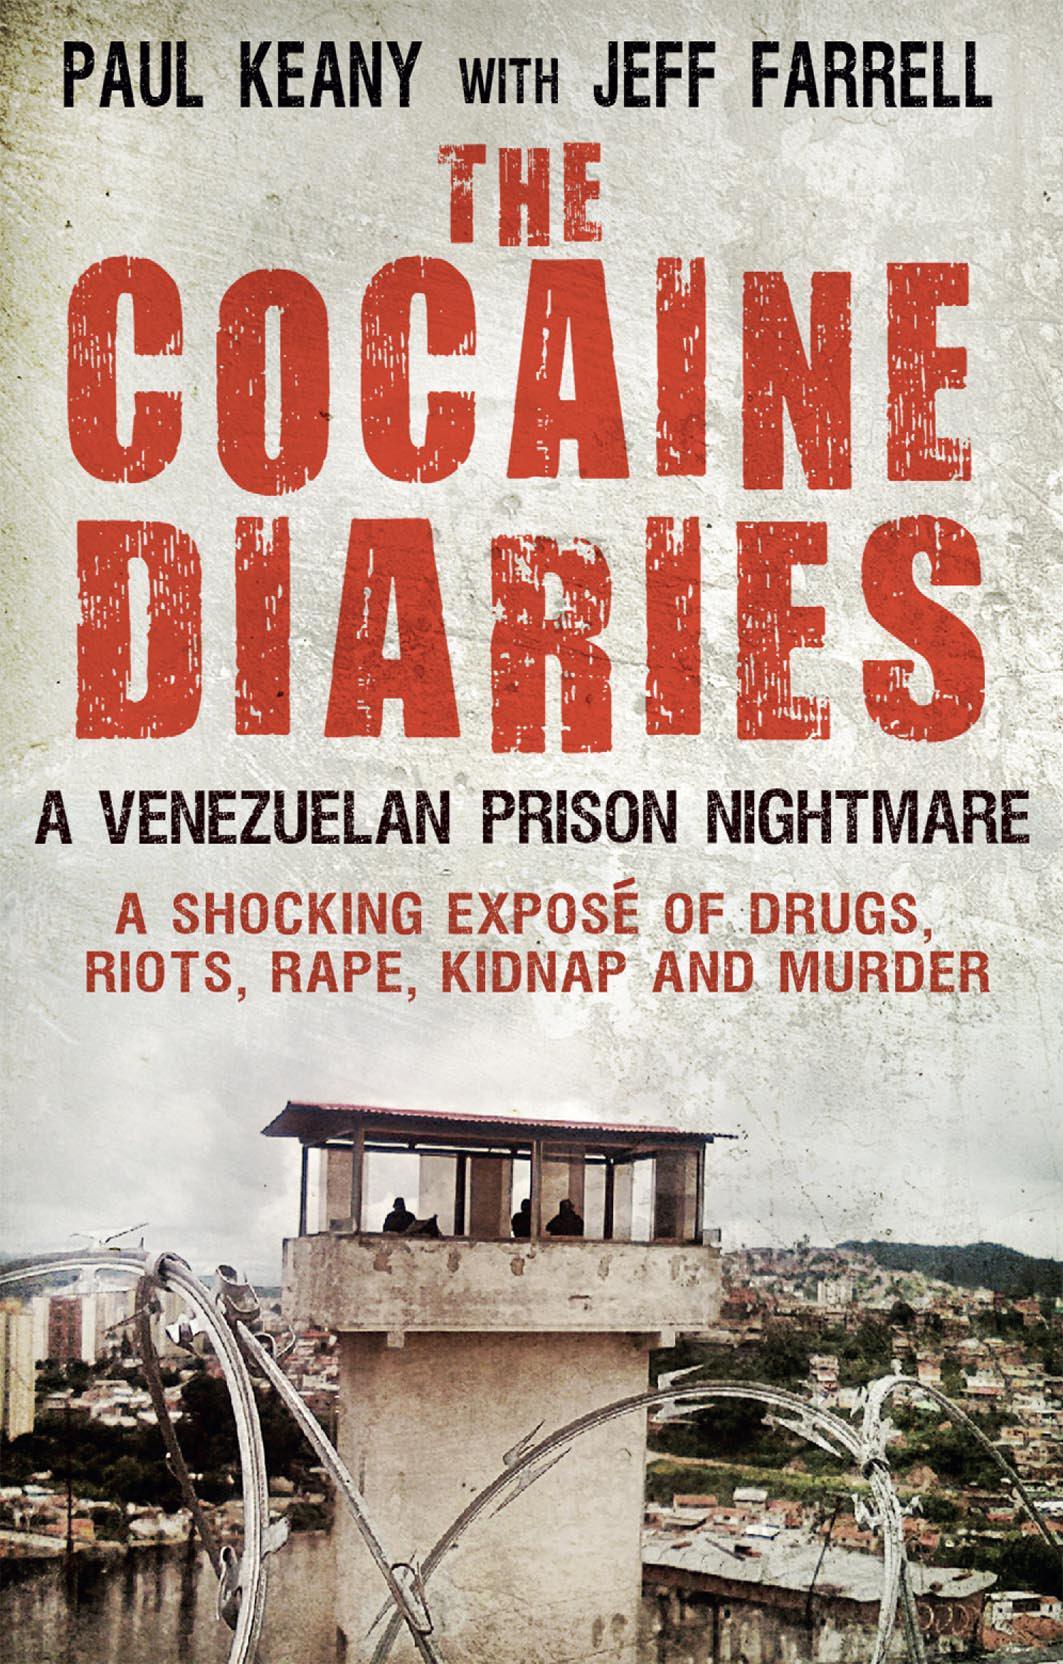 Cocaine Diaries